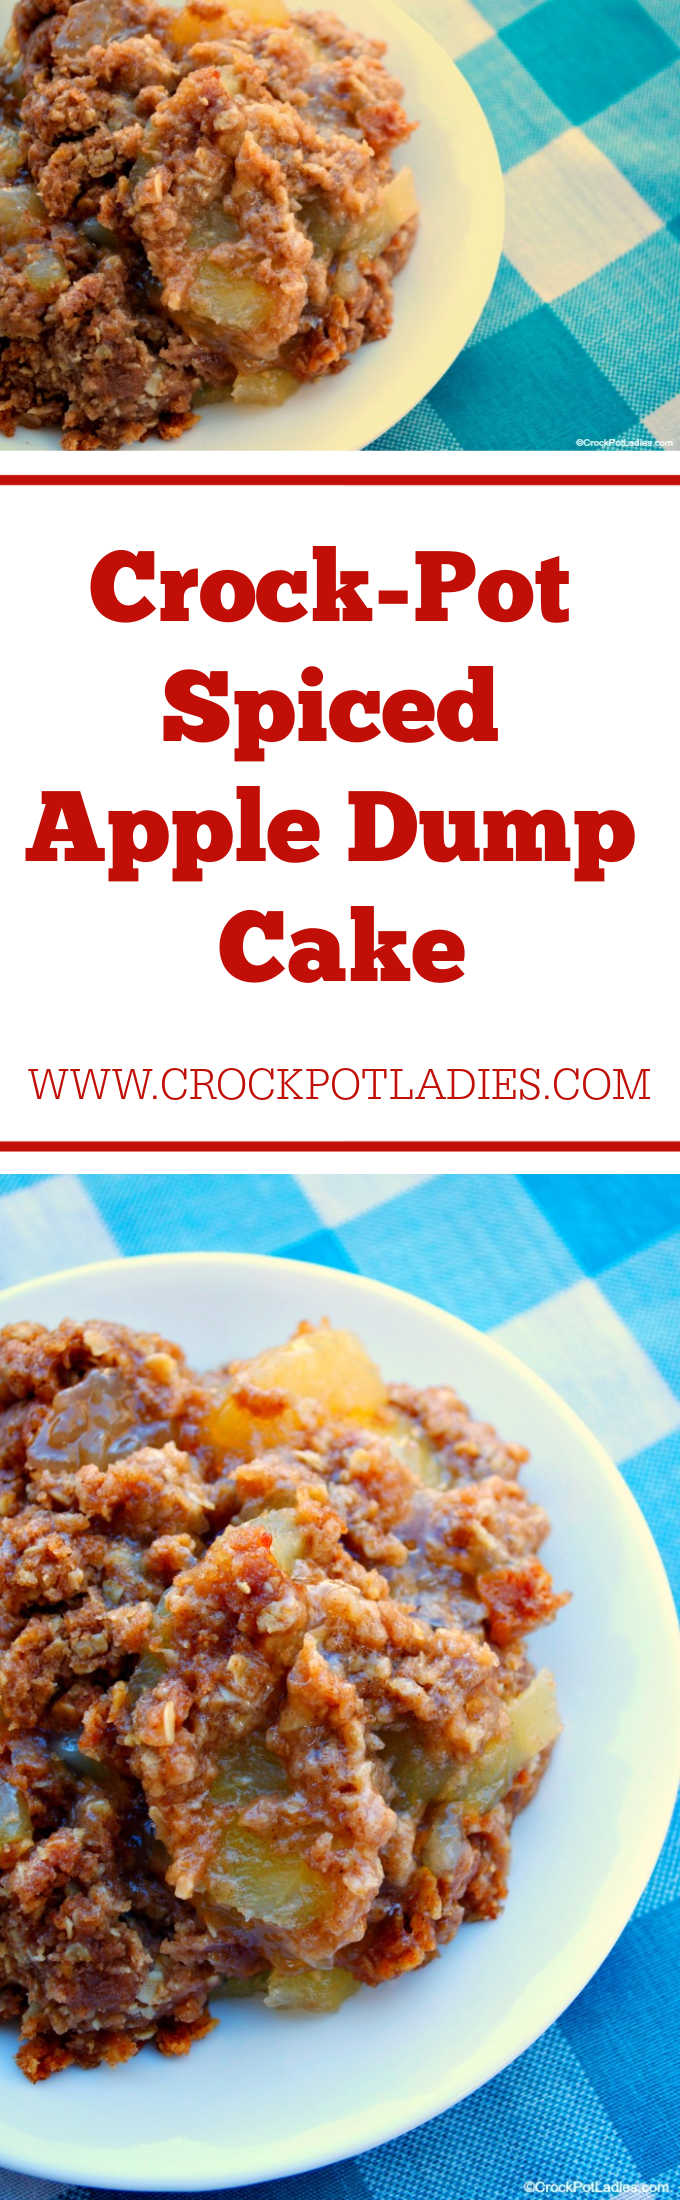 Crock-Pot Spiced Apple Dump Cake